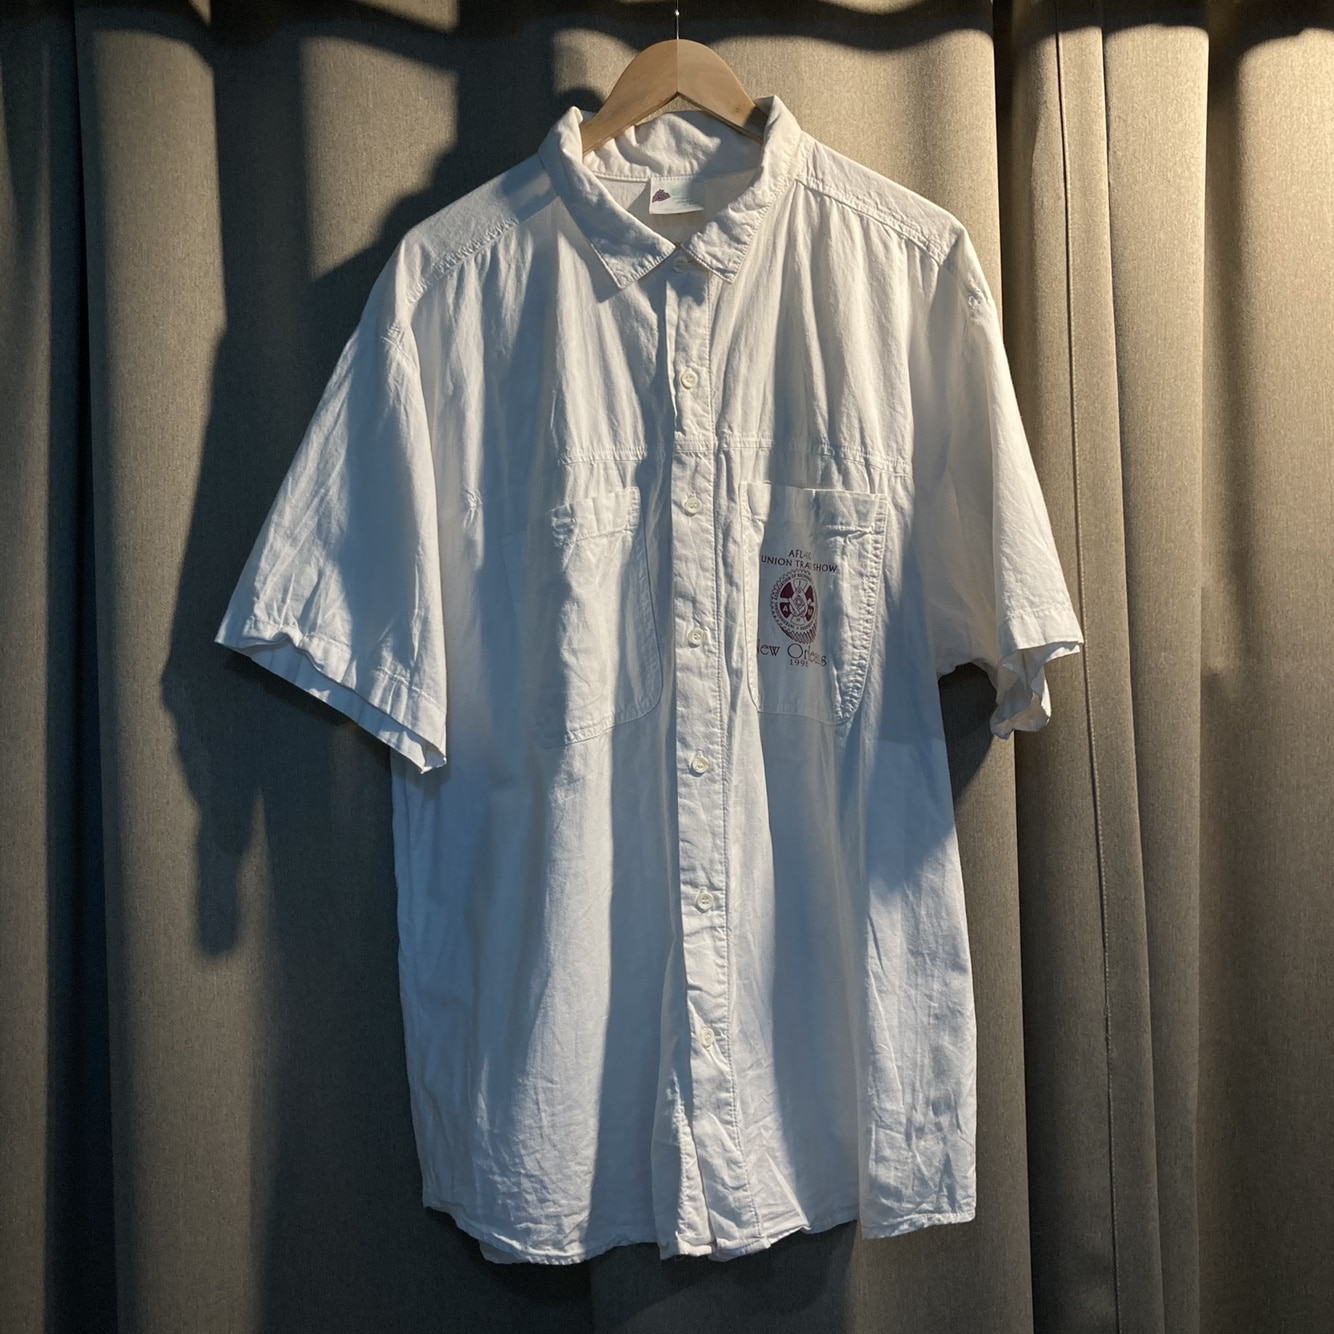 1998 new orleans harley-davison shirt